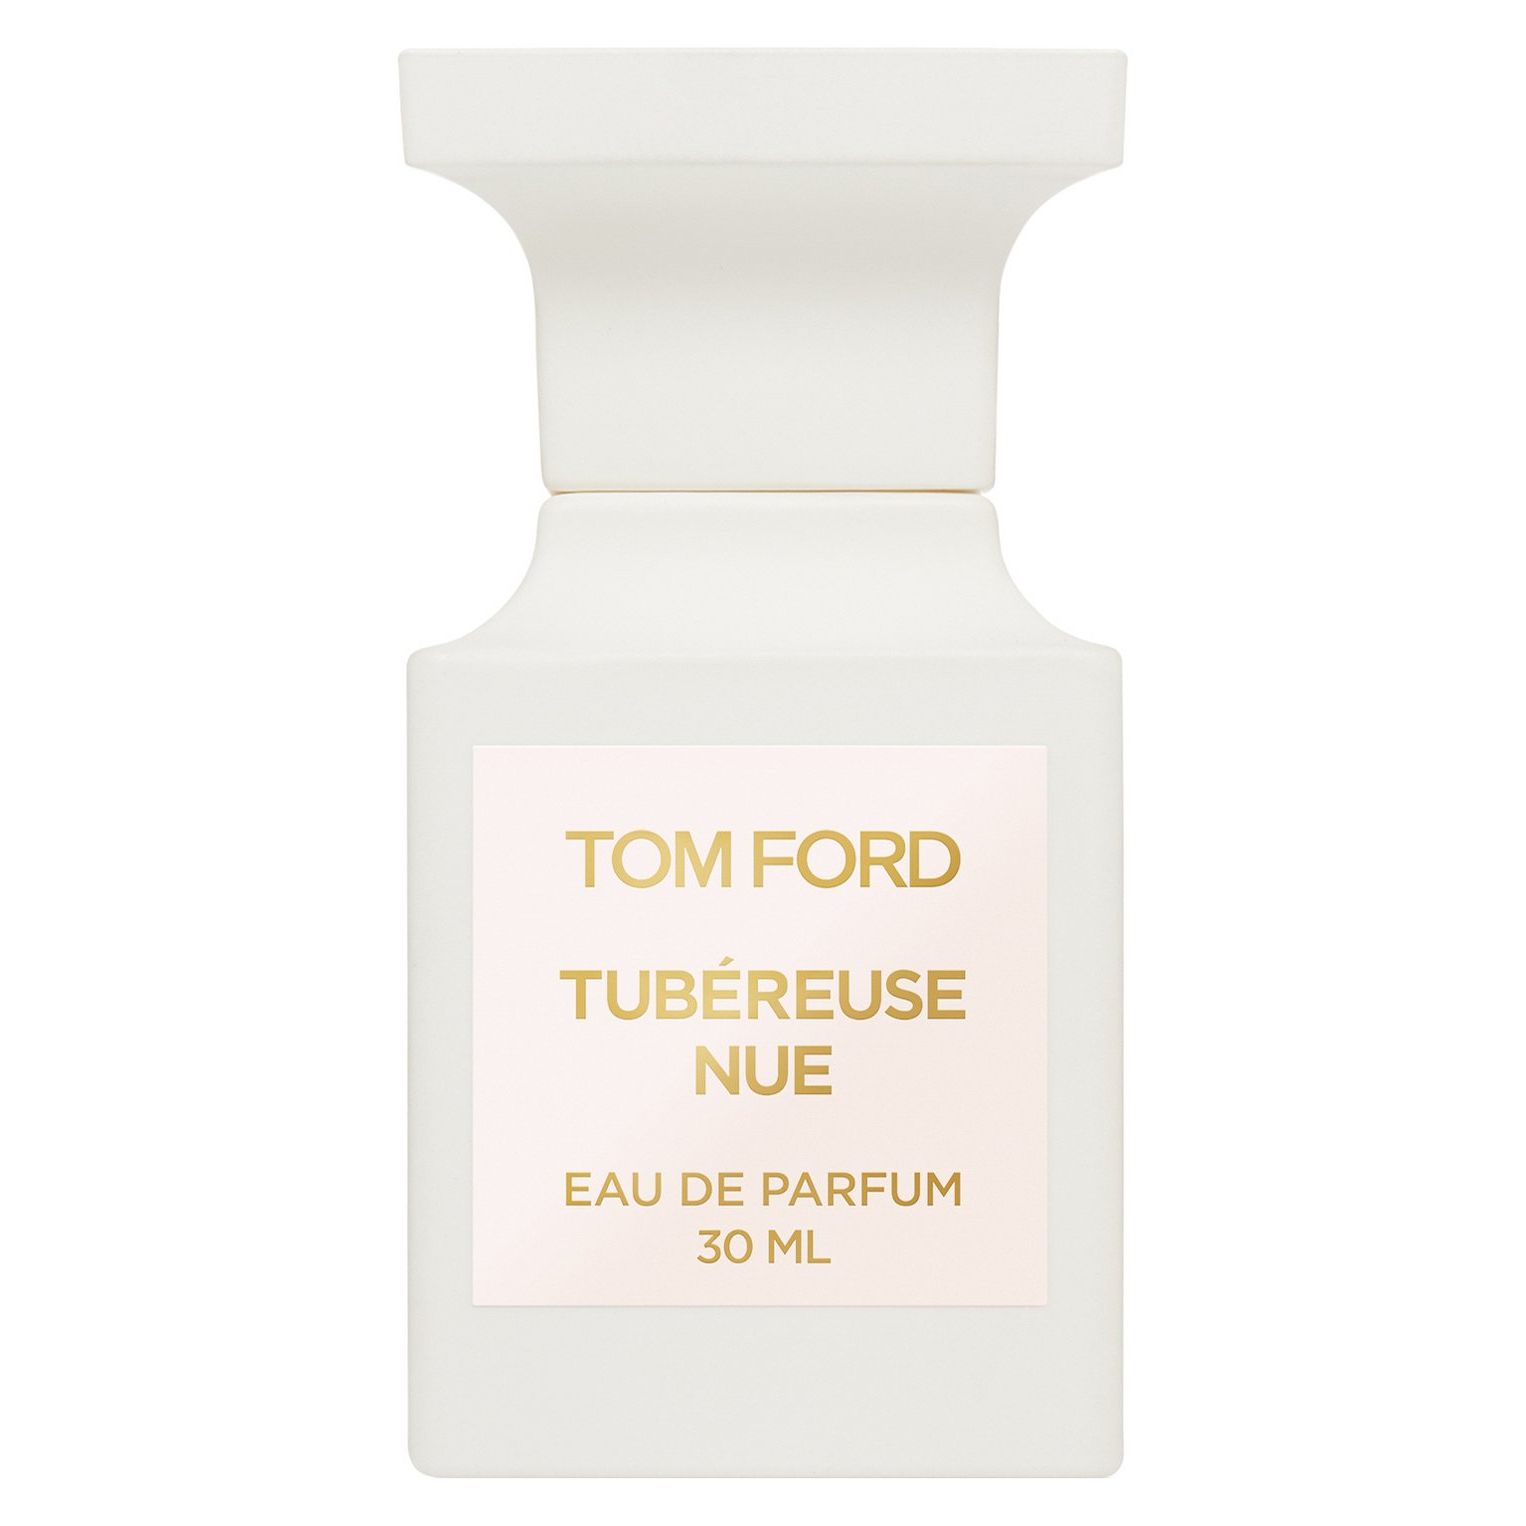 Вода парфюмерная Tom Ford Tubereuse Nue, унисекс, 30 мл tom ford tubereuse nue 100